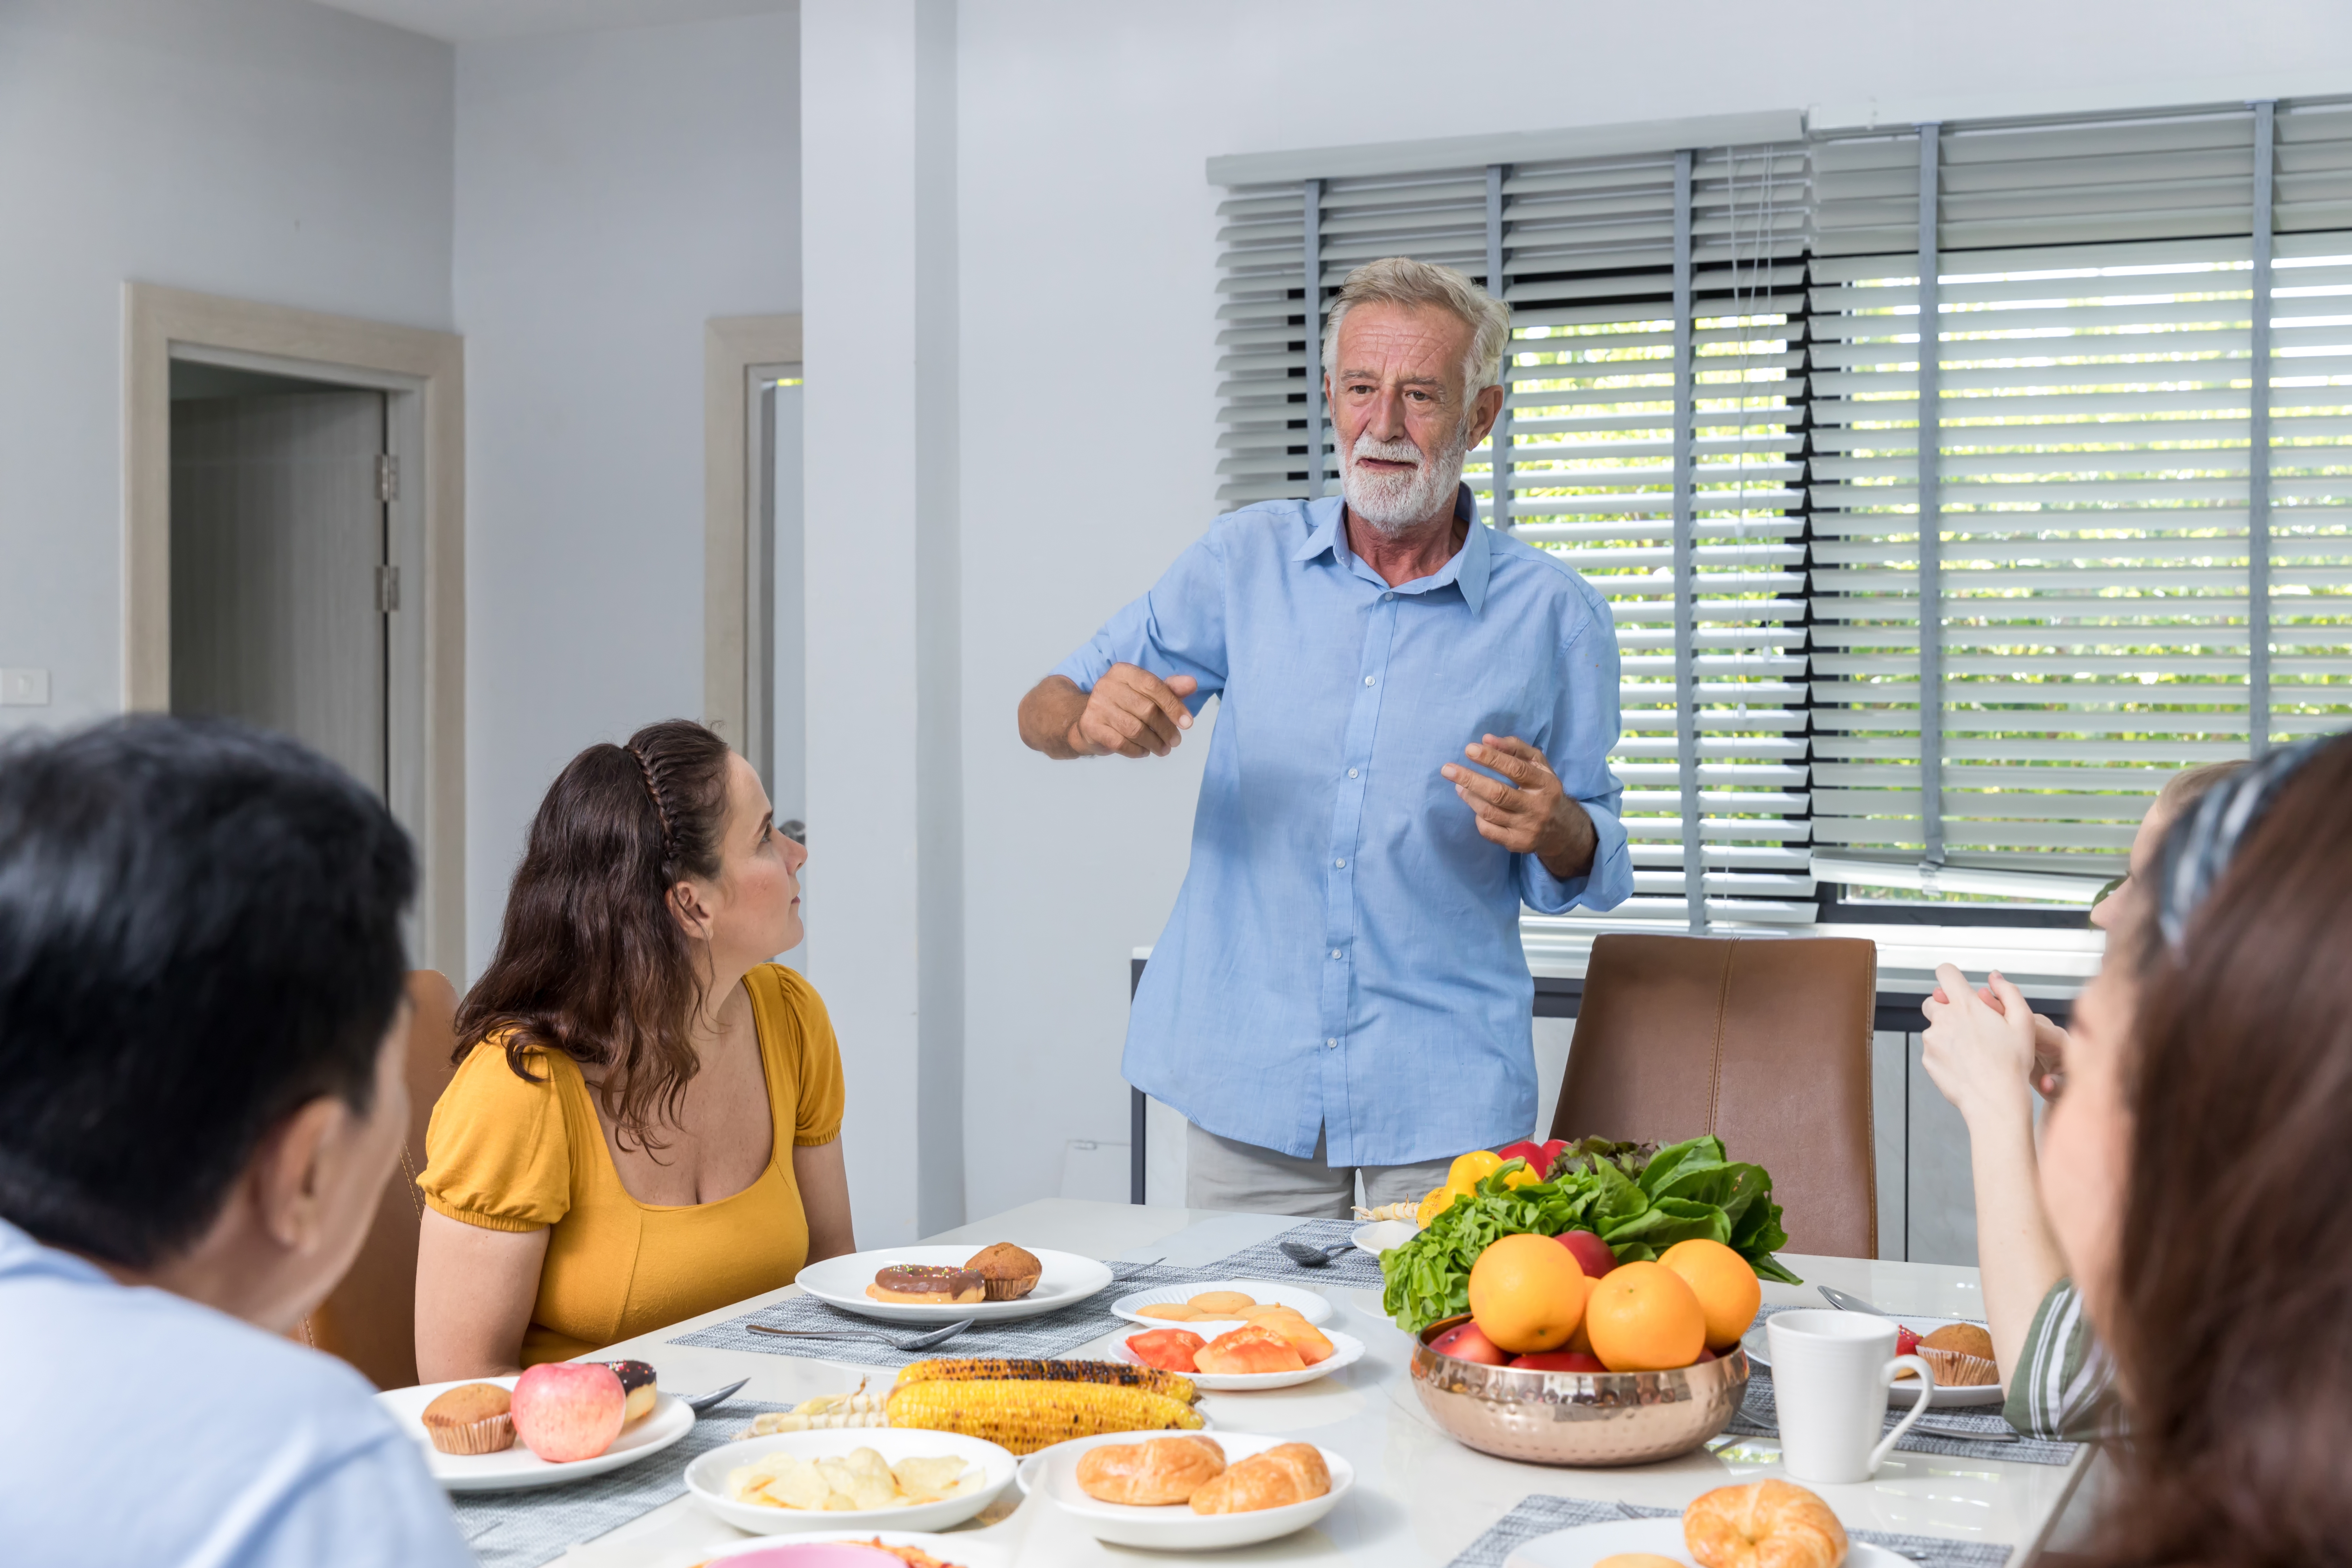 Un homme âgé discutant avec sa famille pendant le dîner dans la salle à manger | Source : Shutterstock